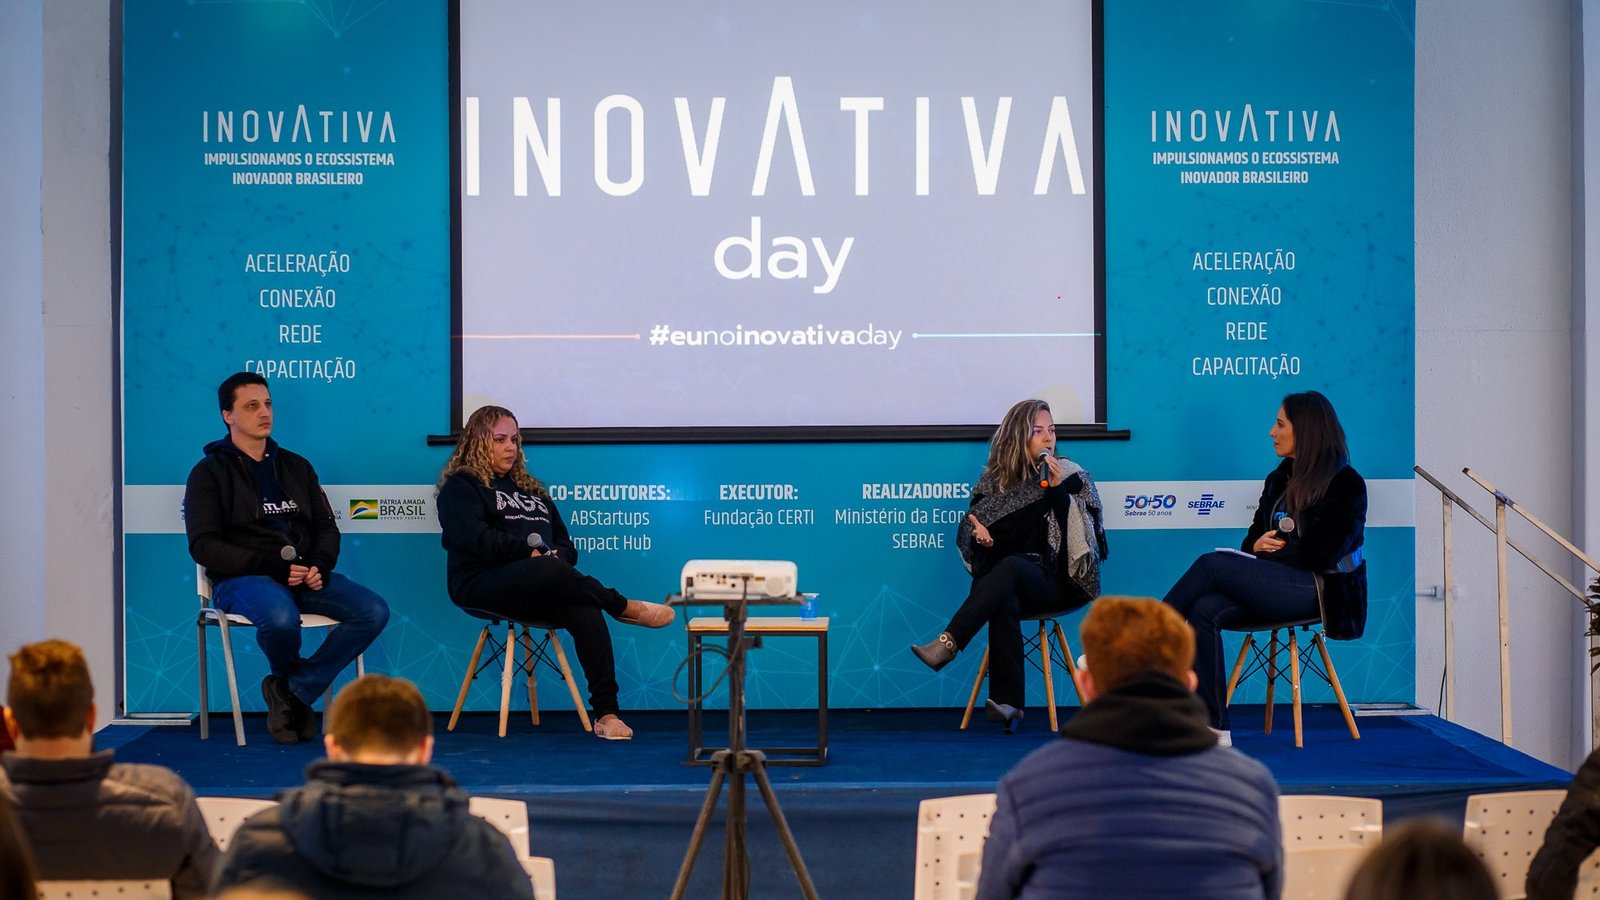 InovAtiva Day promoveu encontro de empresas do programa de aceleração apoiado pelo Sebrae